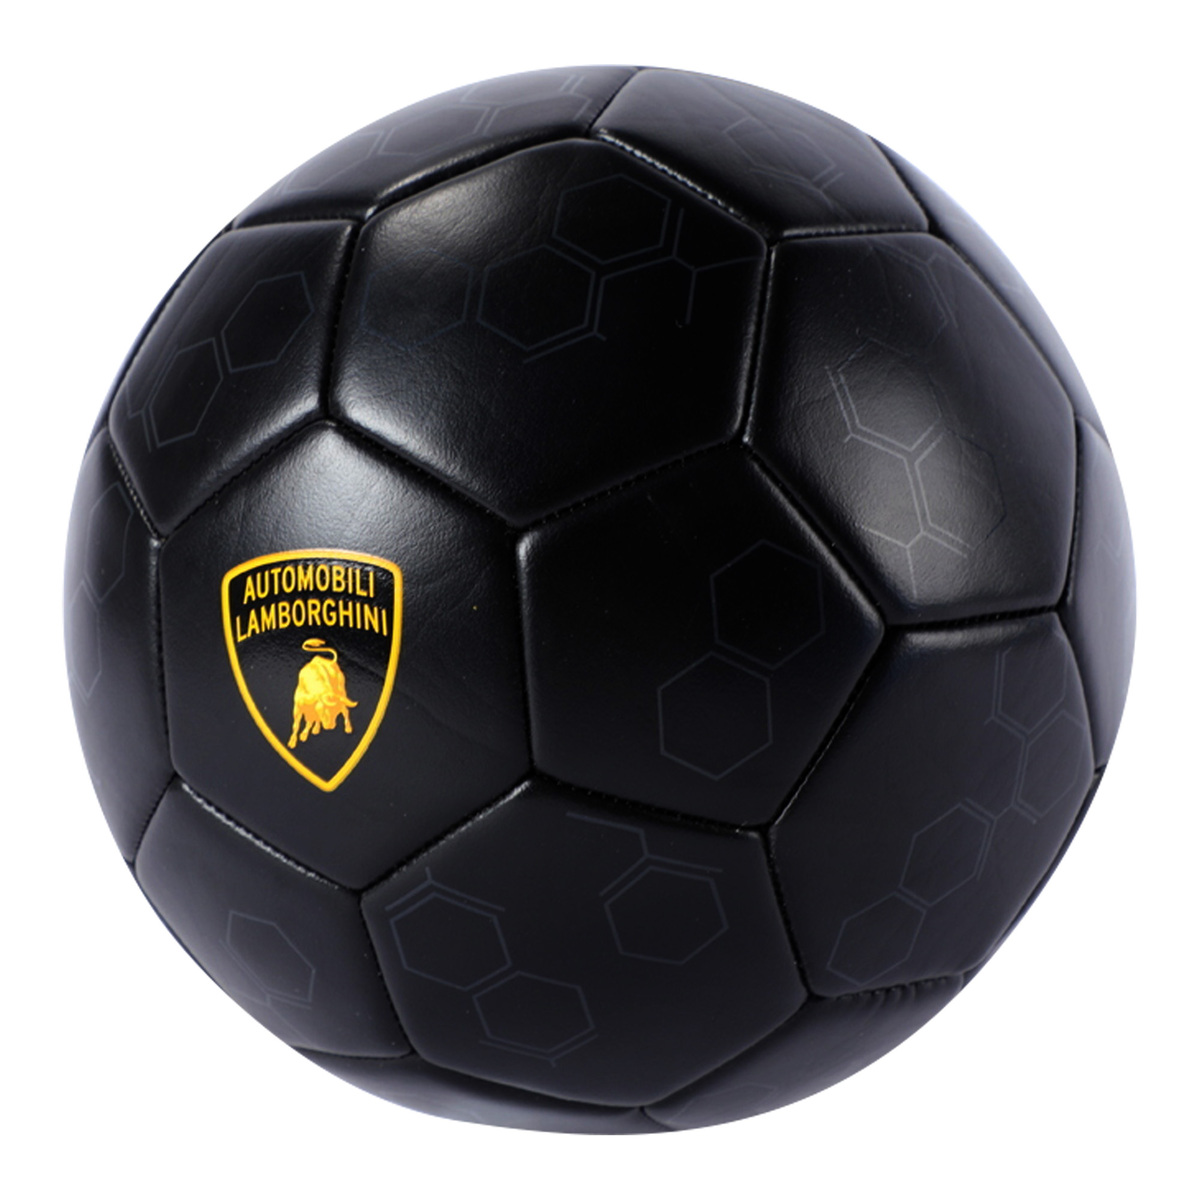 Lamborghini Pvc Football, Size 5, Black, LFB552-5B